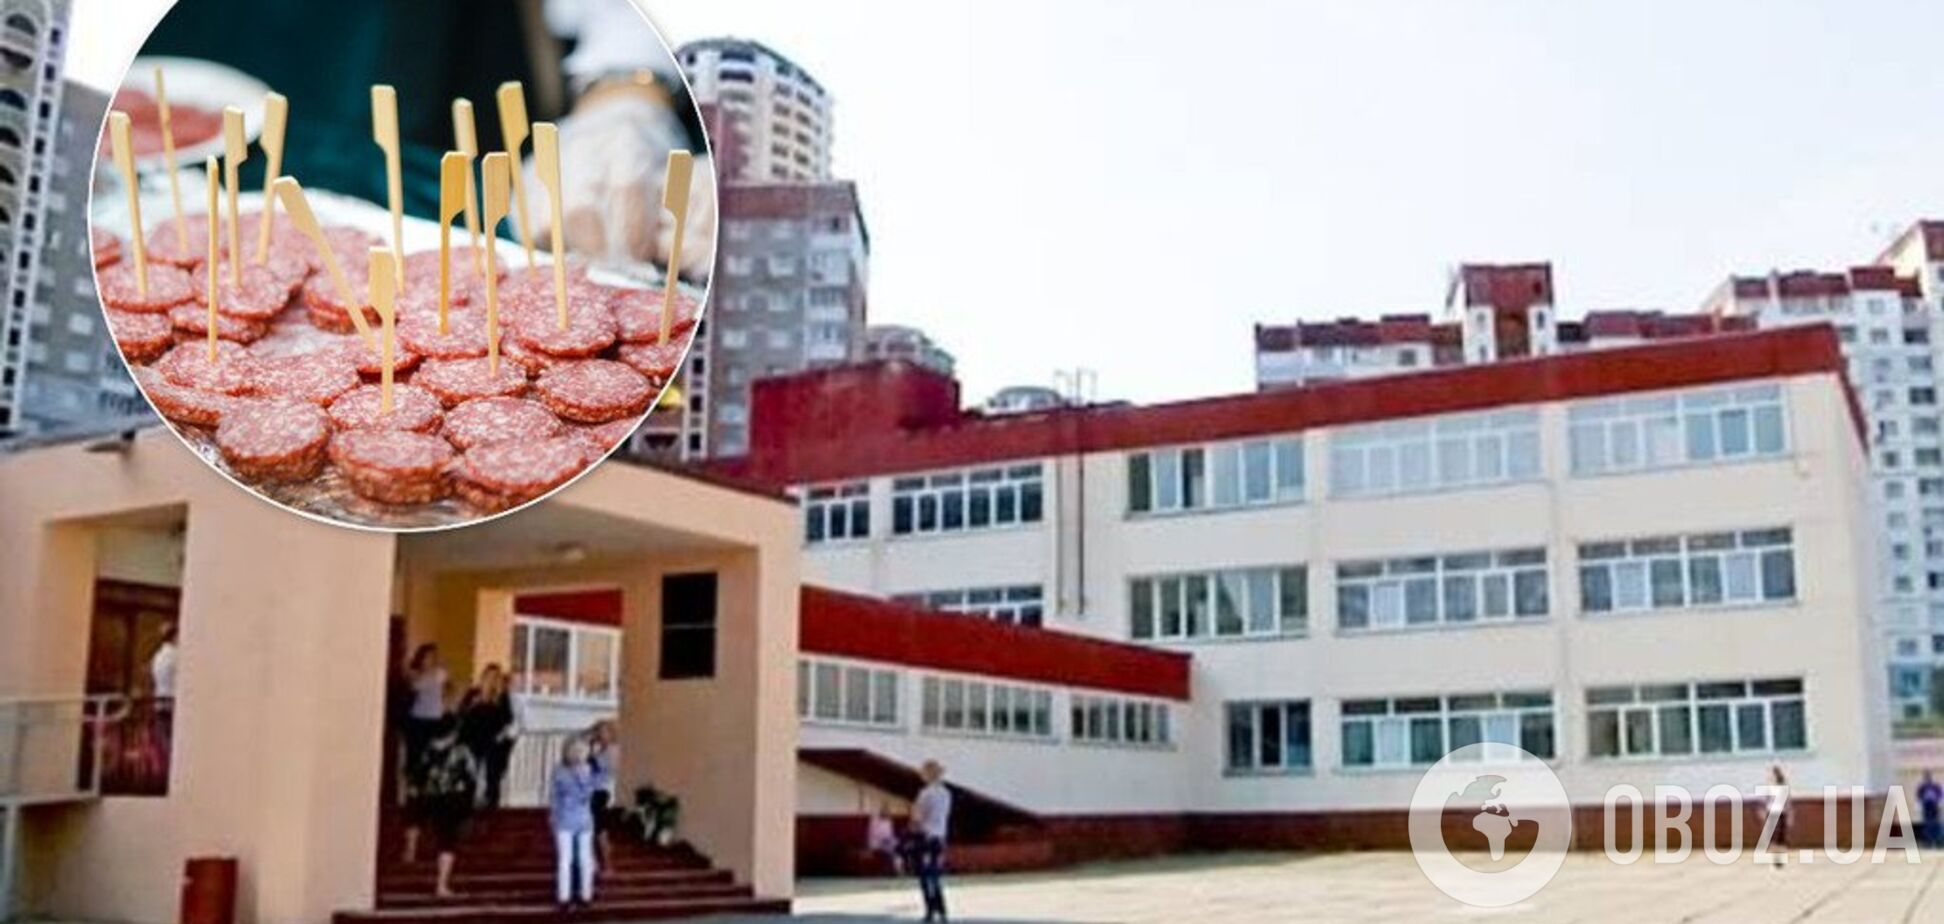 Дегустация колбас для учителей: киевская школа попала в конфуз